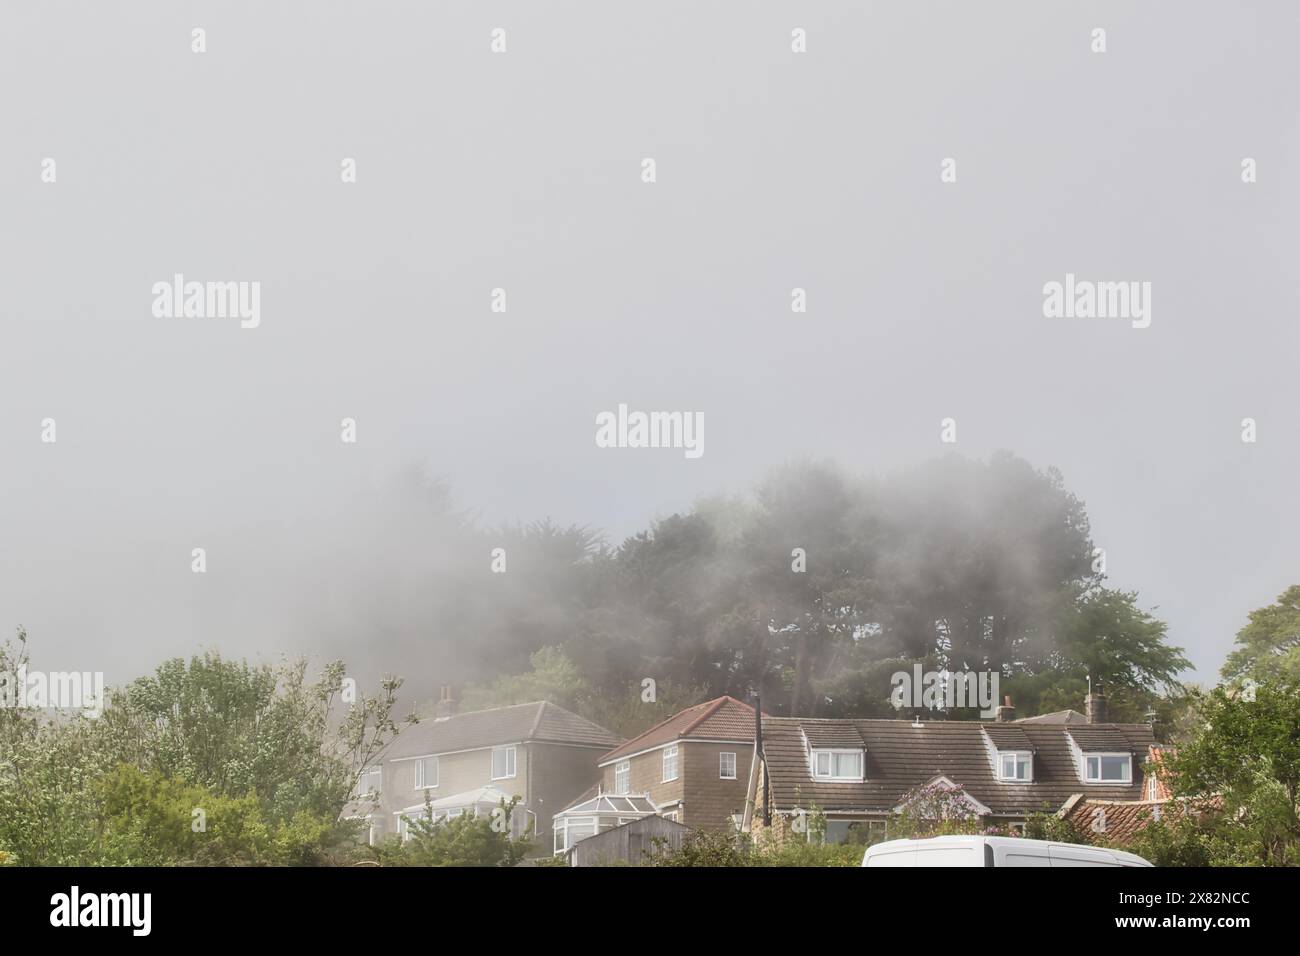 Ein nebeliger Morgen in einem Vorstadtviertel mit Häusern, die teilweise von Nebel und Bäumen im Hintergrund verdeckt sind. Stockfoto